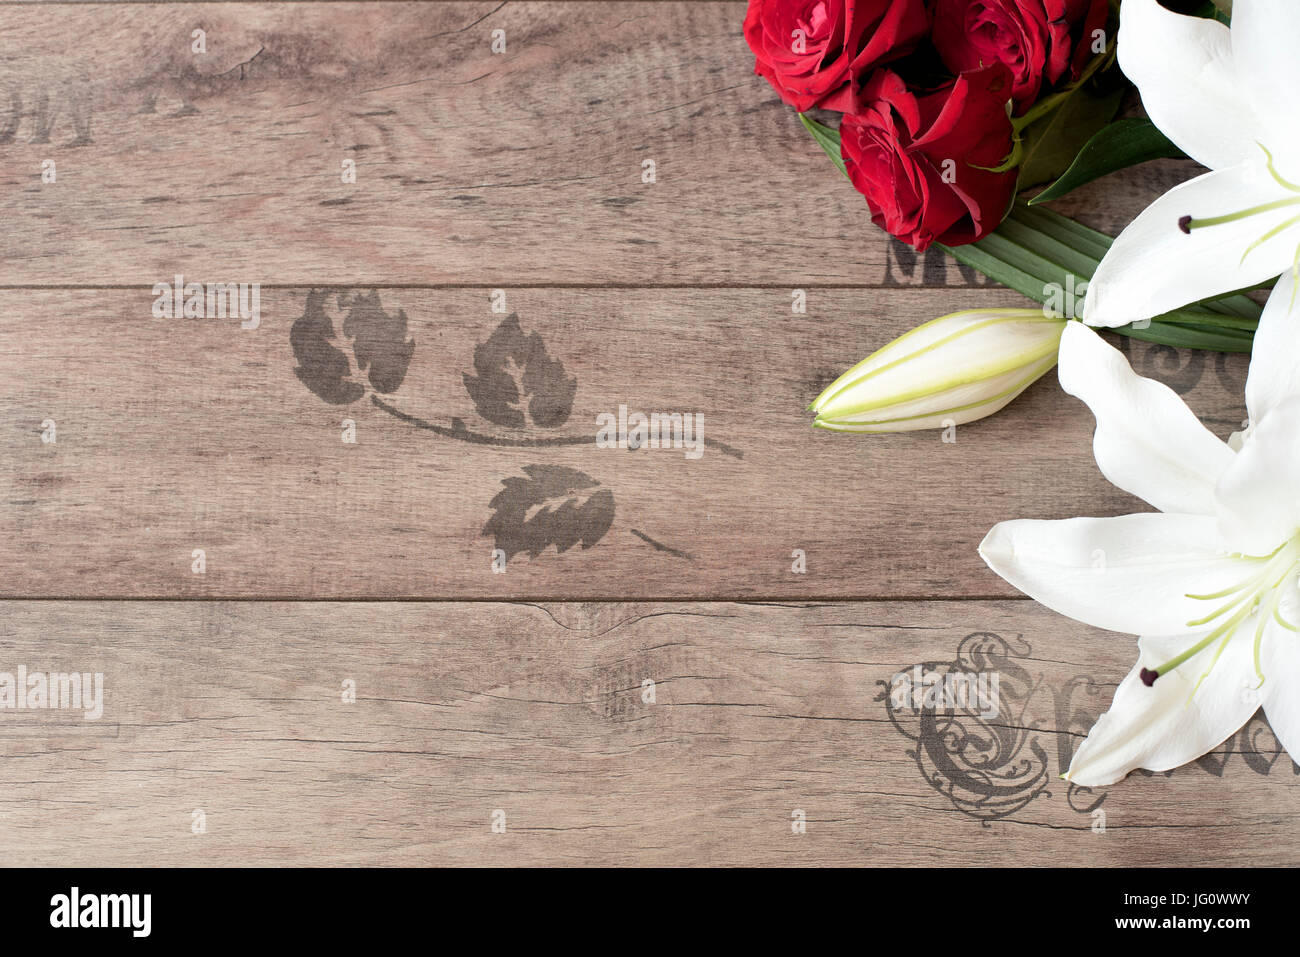 Floral frame avec de superbes lys blancs et roses rouges sur fond de bois. Copier l'espace. Carte-cadeau, mariage, la saint valentin ou la fête des mères background Banque D'Images